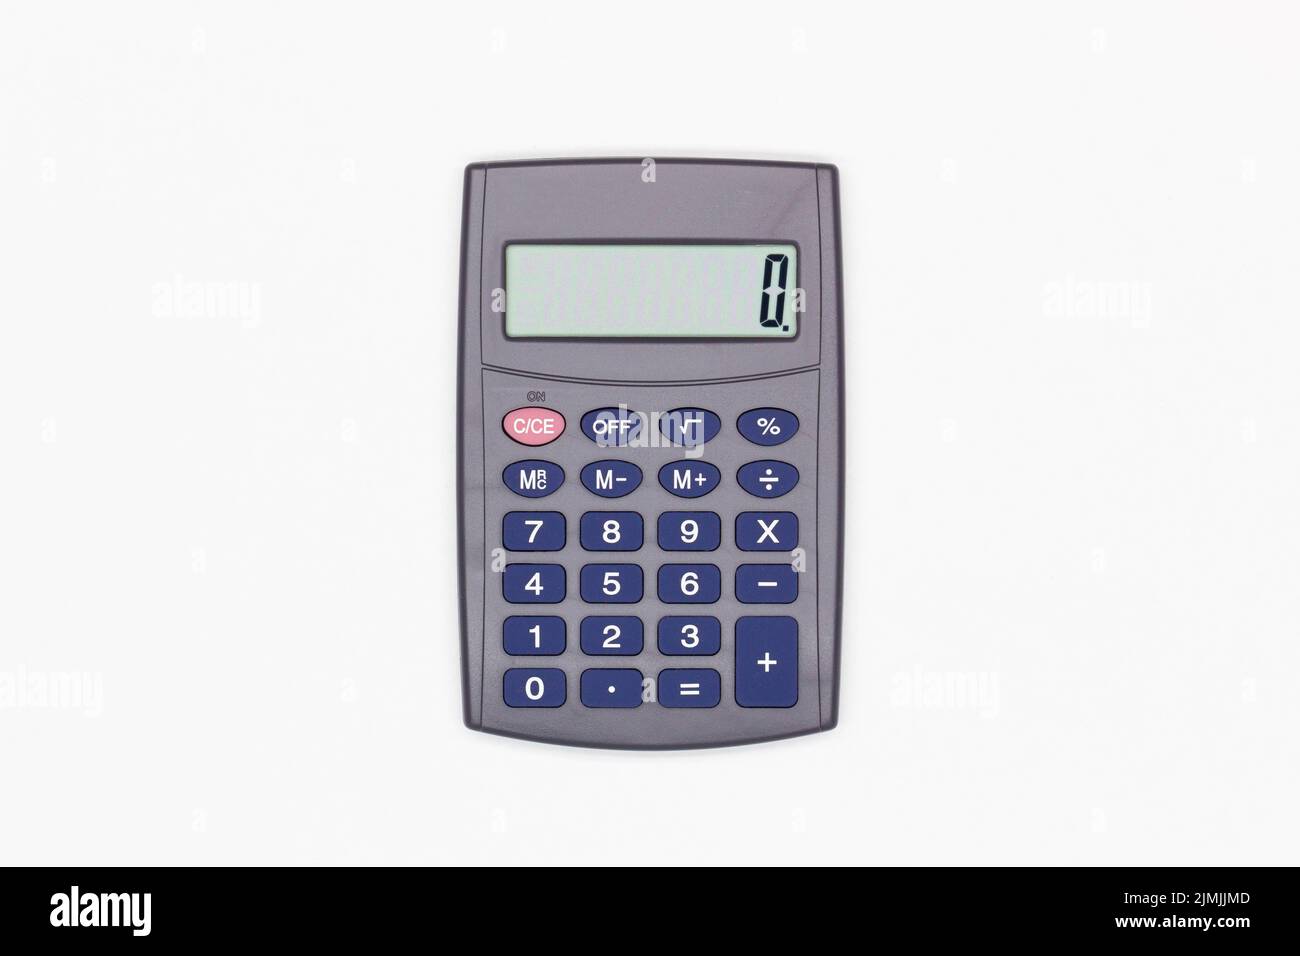 Calculatrice avec de grands boutons bleus et zéro sur l'écran numérique sur fond blanc. Calculatrice solaire. Machine électronique pour calculs mathématiques Banque D'Images